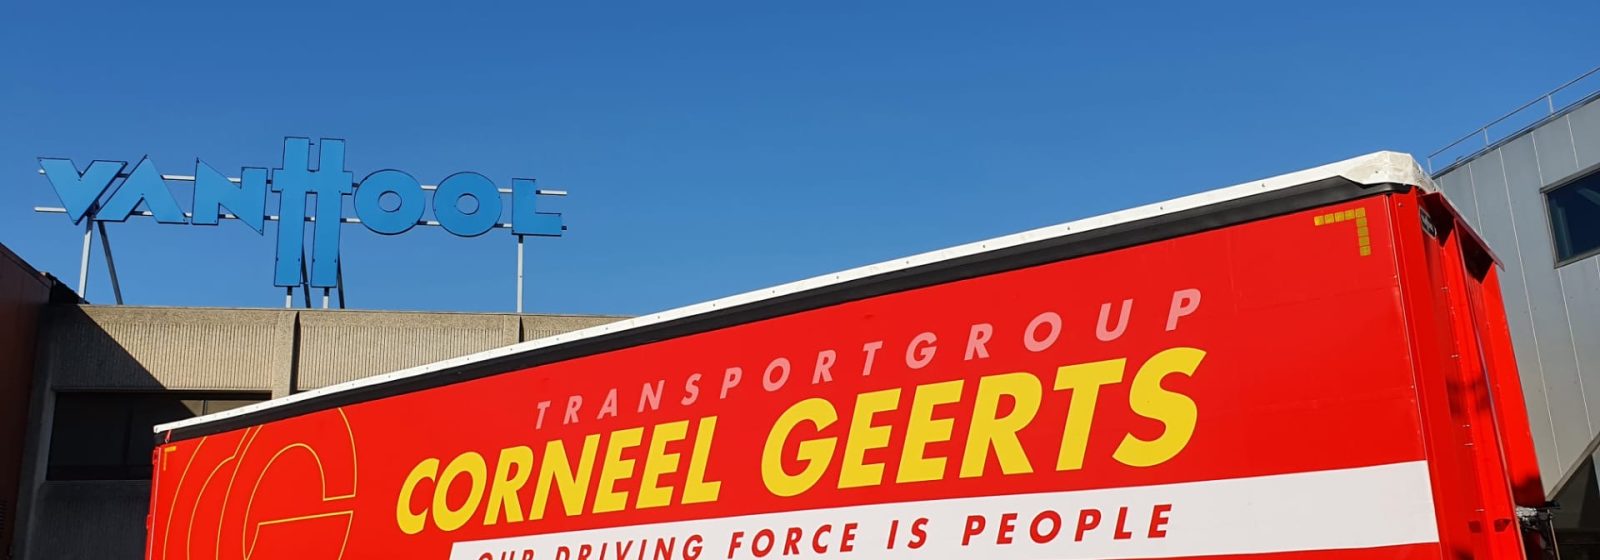 Corneel Geerts bestelde twintig opleggers bij Van Hool